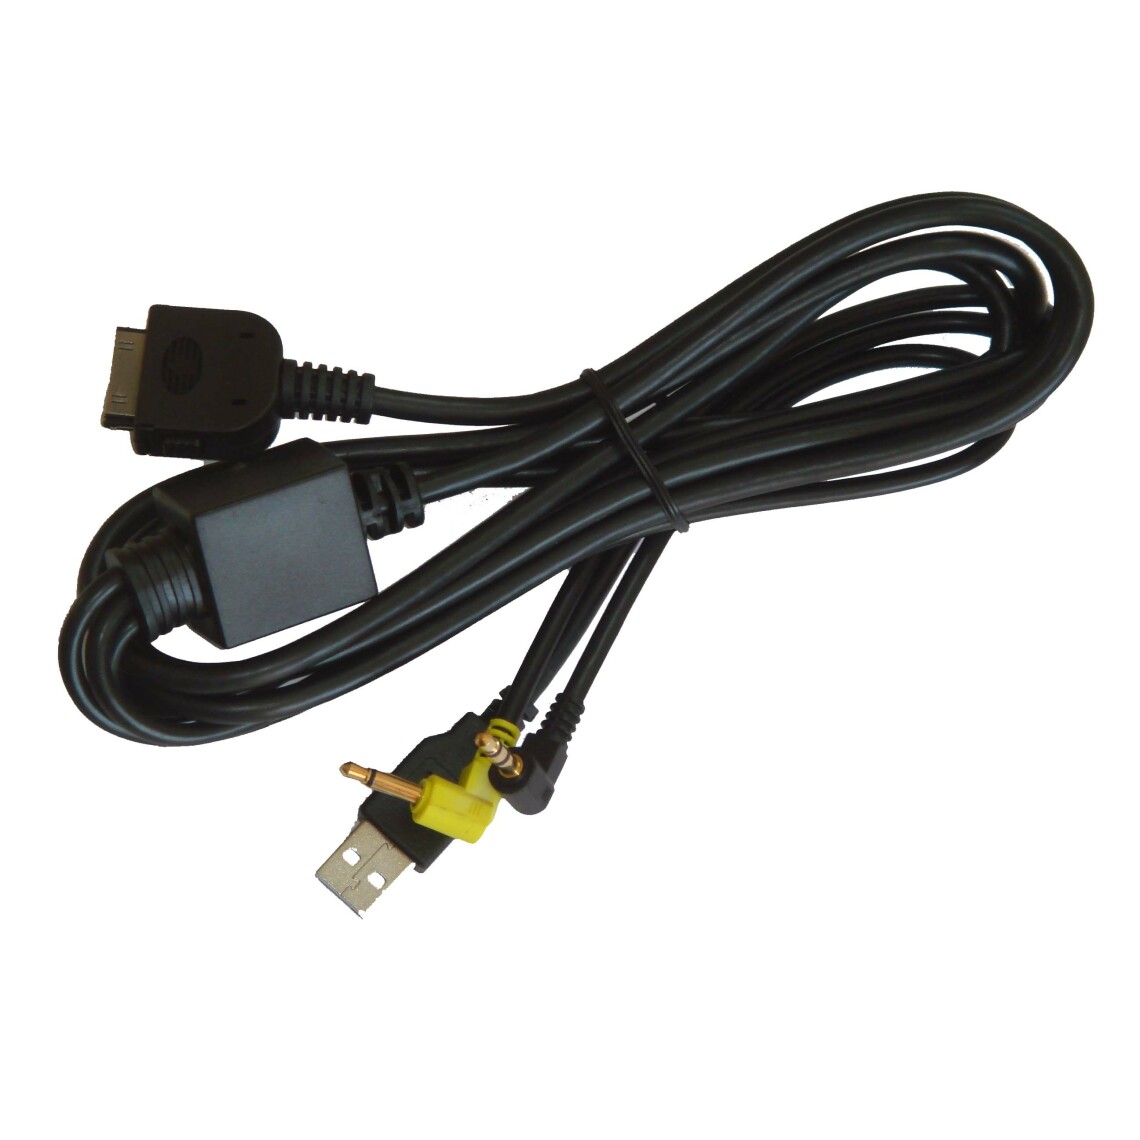 Vhbw - vhbw Câble adaptateur de ligne AUX Radio compatible avec Kenwood DNX7220, DNX7240BT, DNX7320, DNX7320CN, DNX7340BT, DNX8120 voiture - USB, prise jack - Alimentation modulaire